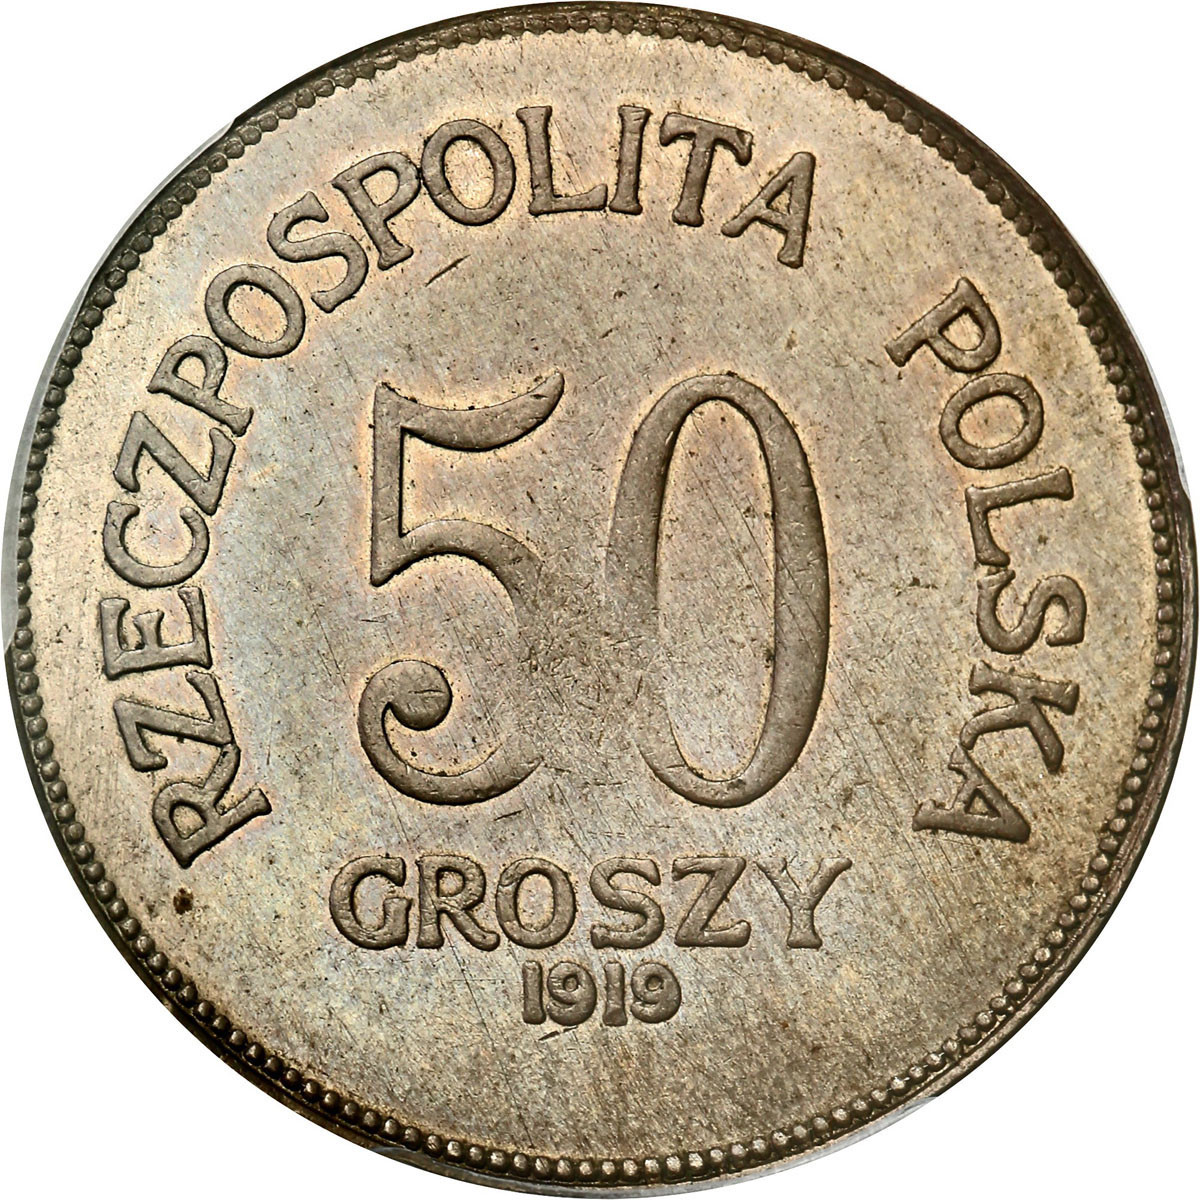 PRÓBA nikiel 50 groszy 1919, ex Faruk, ex Karolkiewicz collection - UNIKAT - PCGS SP62 (MAX)